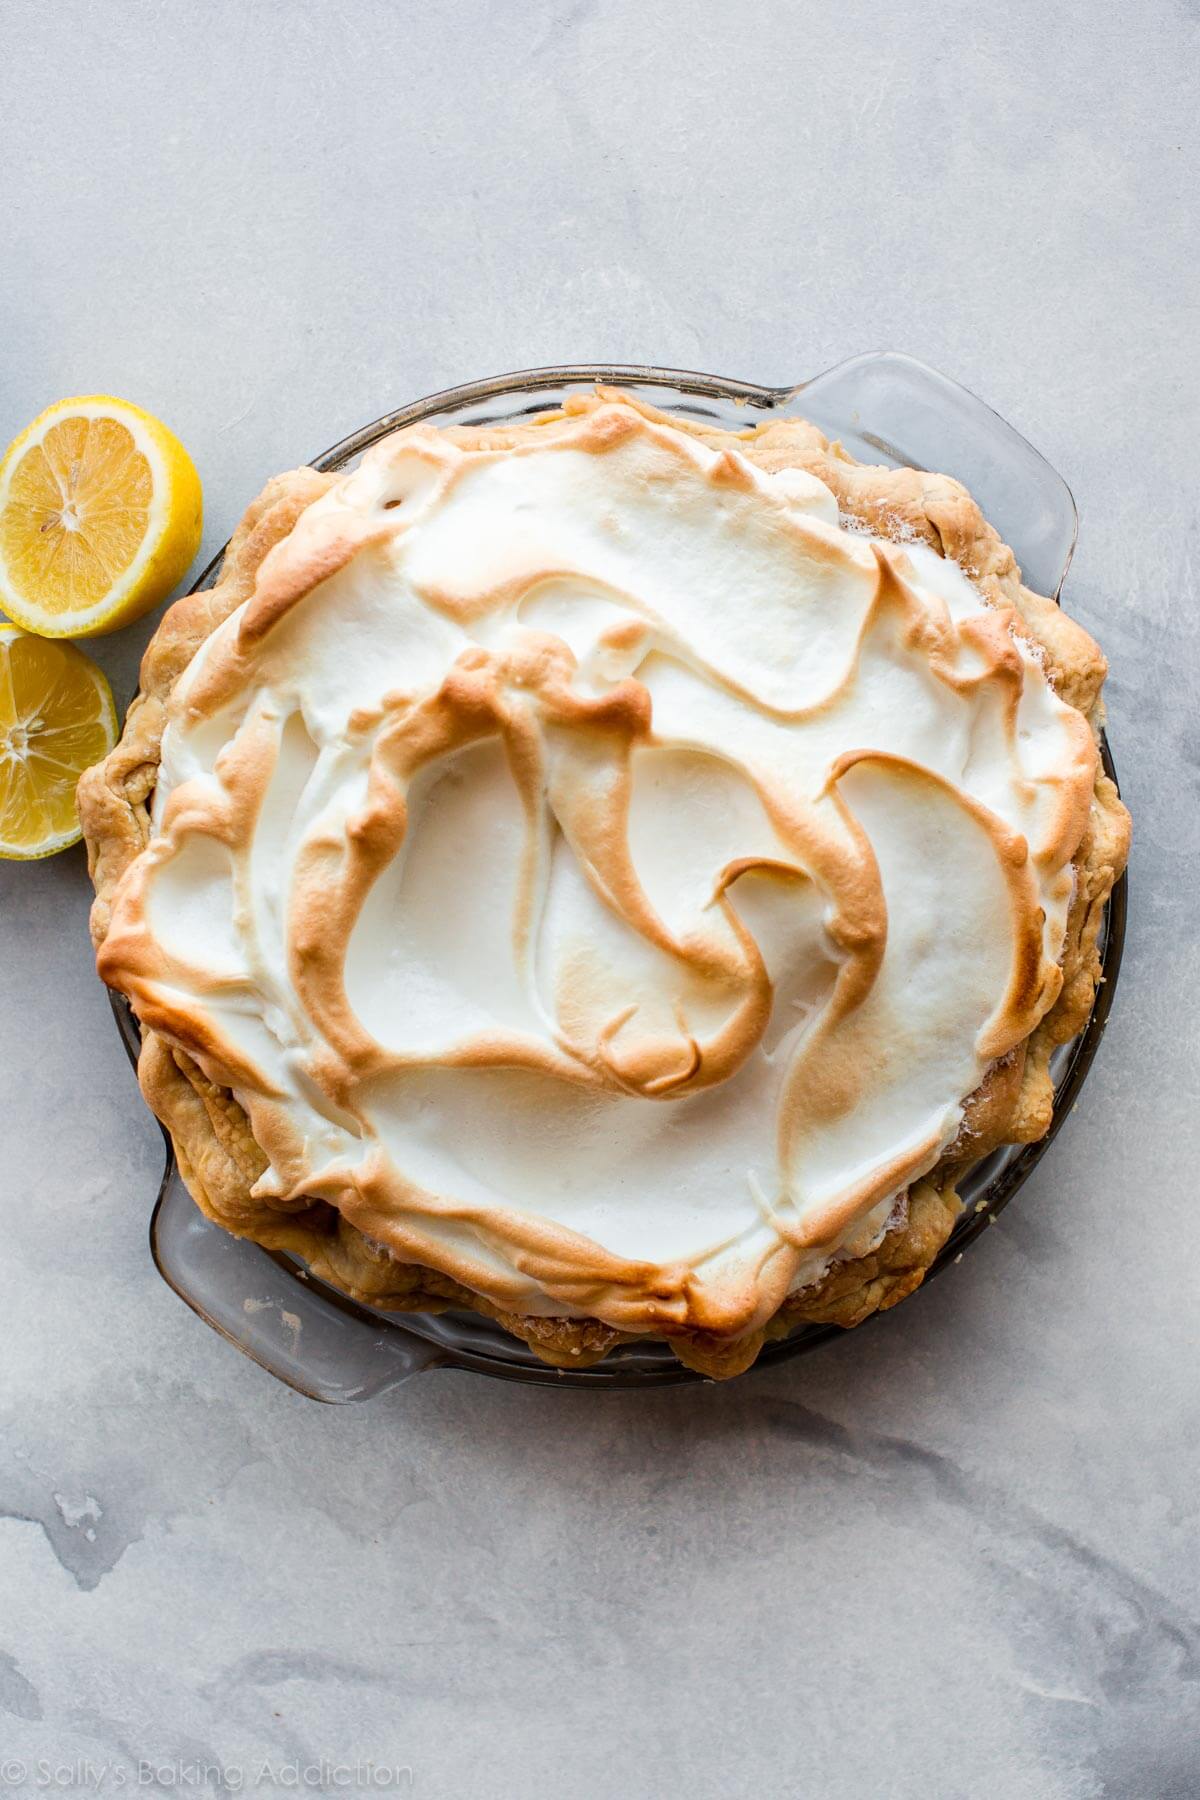 Apprenez à faire une tarte au citron meringuée classique avec une garniture crémeuse et sucrée au citron, une délicieuse meringue et une croûte de tarte feuilletée maison! Recette sur sallysbakingaddiction.com